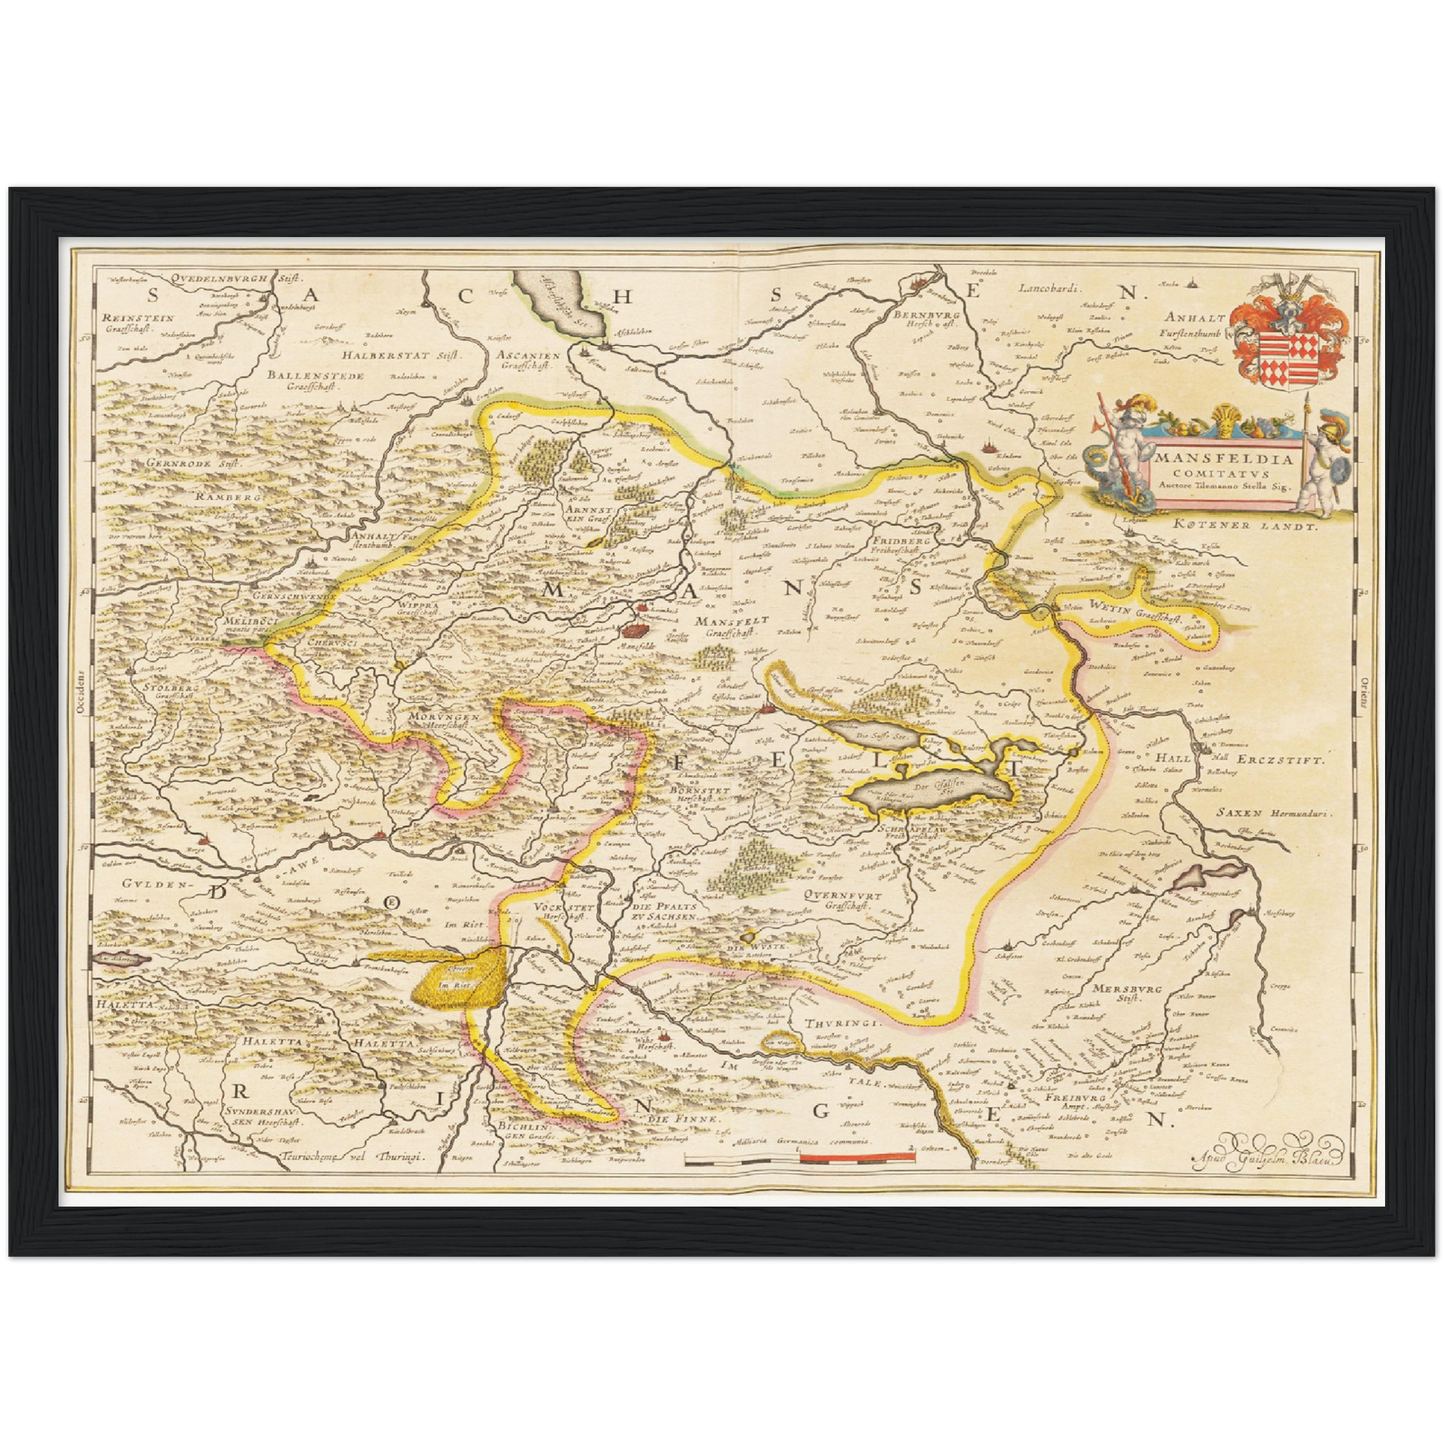 Historische Landkarte Mansfeld um 1635